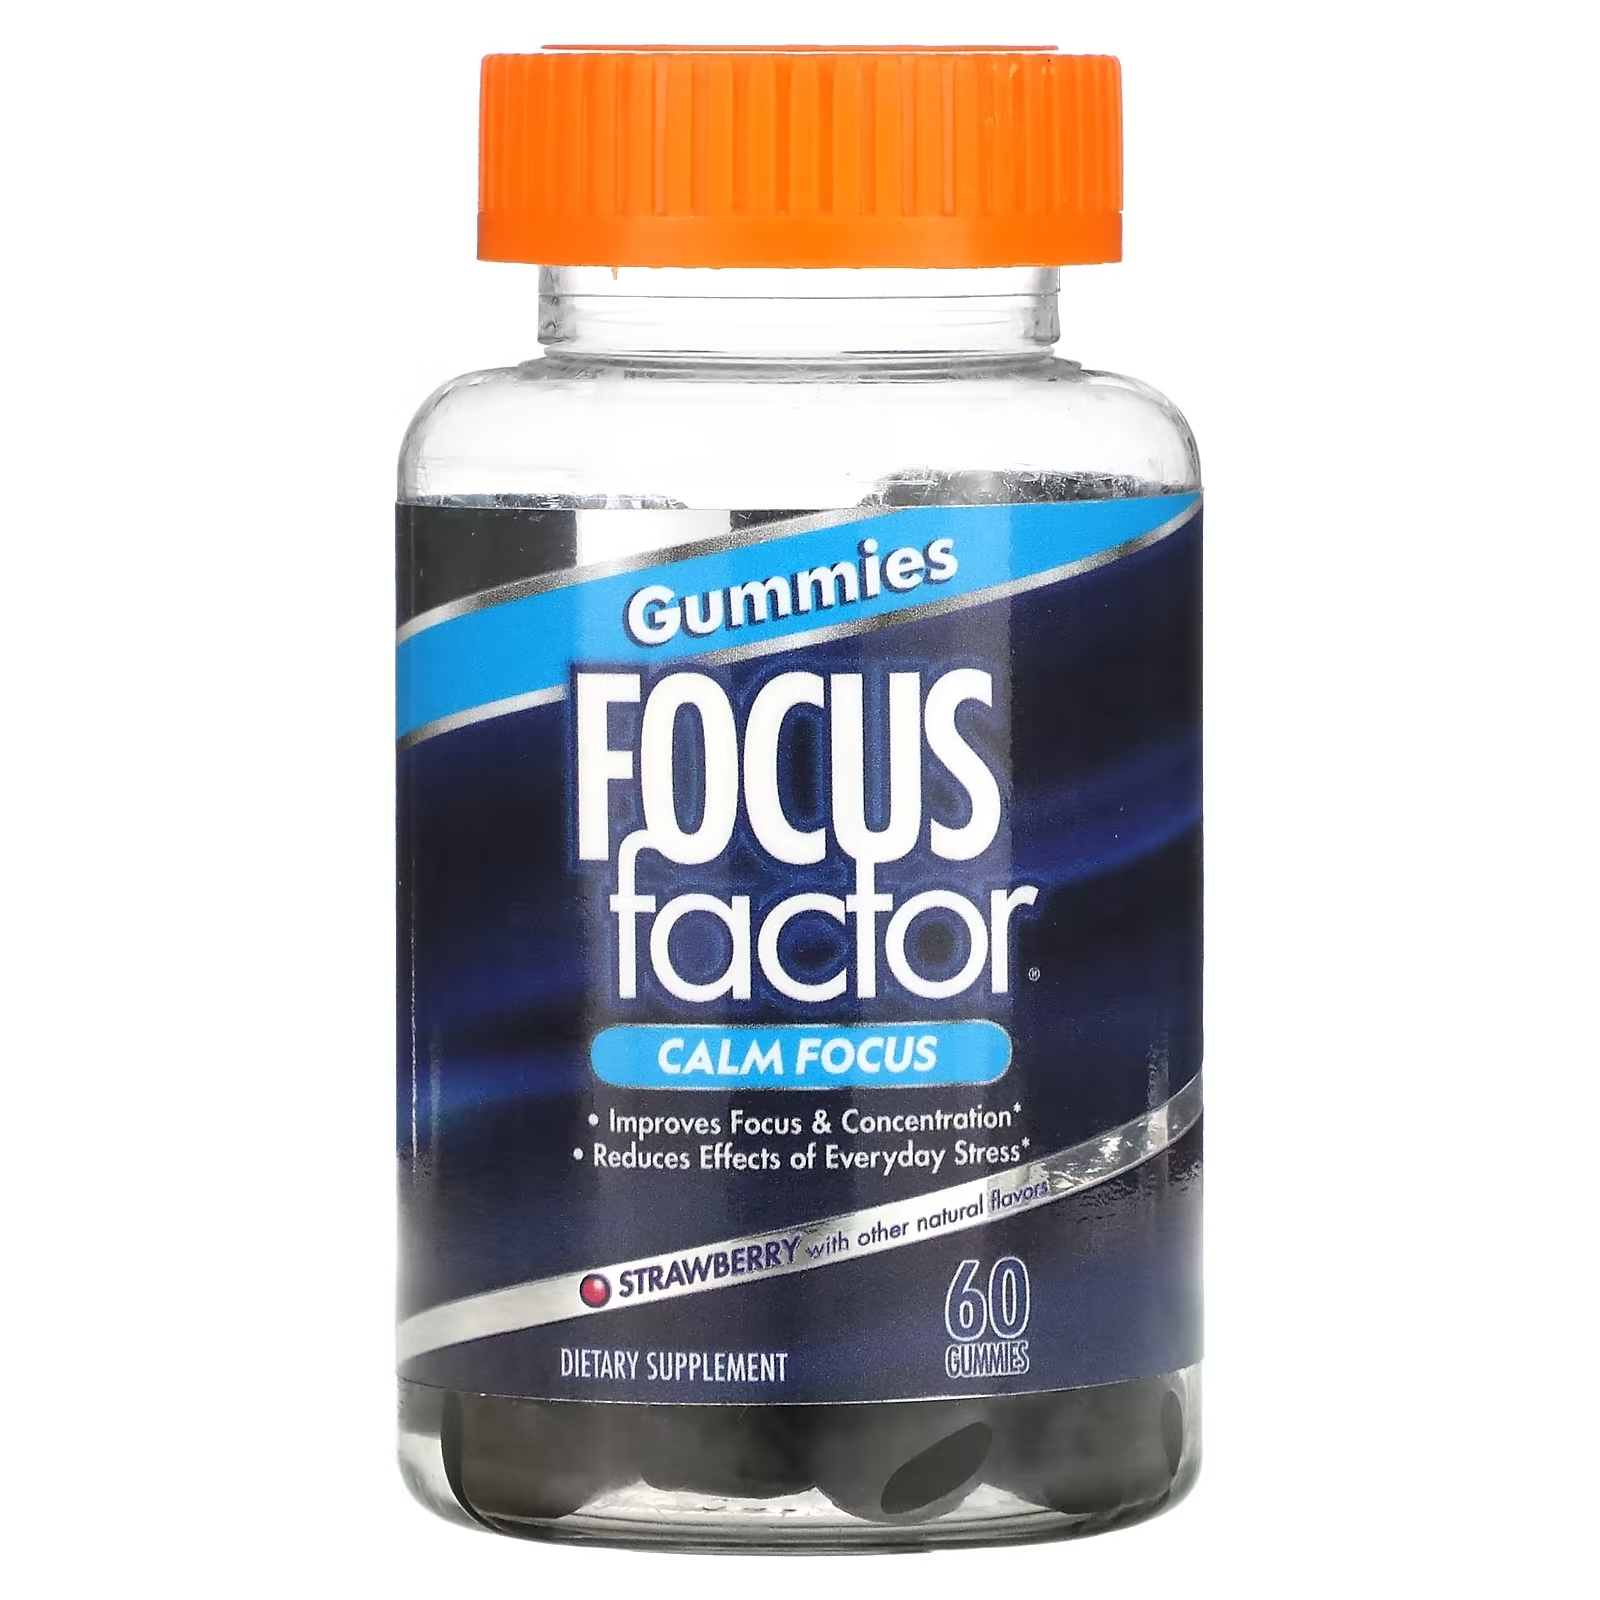 Focus Factor Calm Focus клубника, 60 жевательных таблеток focus factor calm focus клубника 60 жевательных таблеток